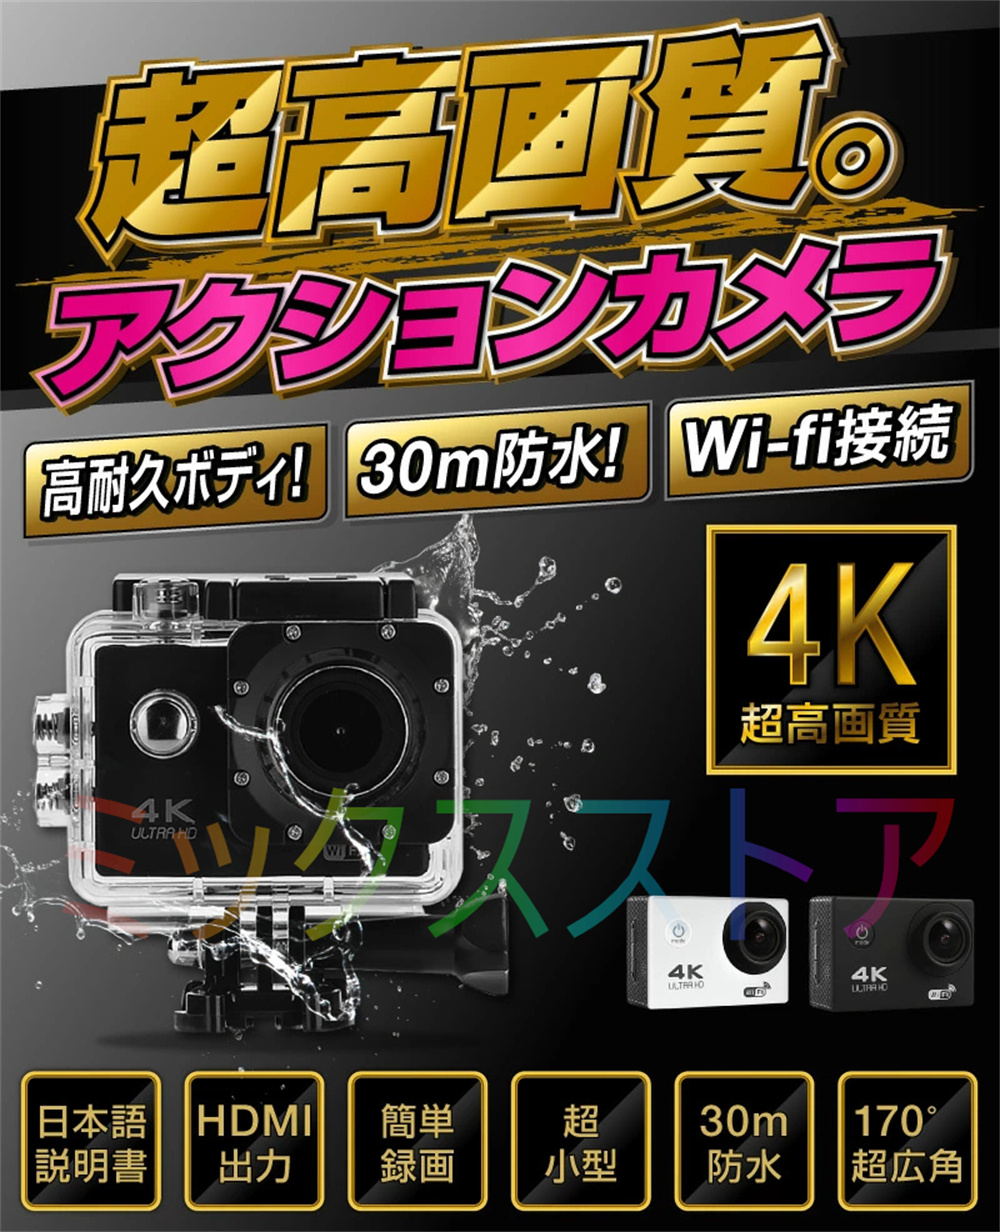 アクションカメラ ミニ DVスポーツカメラ HDMI GoPro 4K 高画質 アウトドア 1600万画素 スポーツ WIFI搭載 車載 1080P  マウント バイク用小型カメラ 30M防水 :SXJK008:ミックスストア 通販 